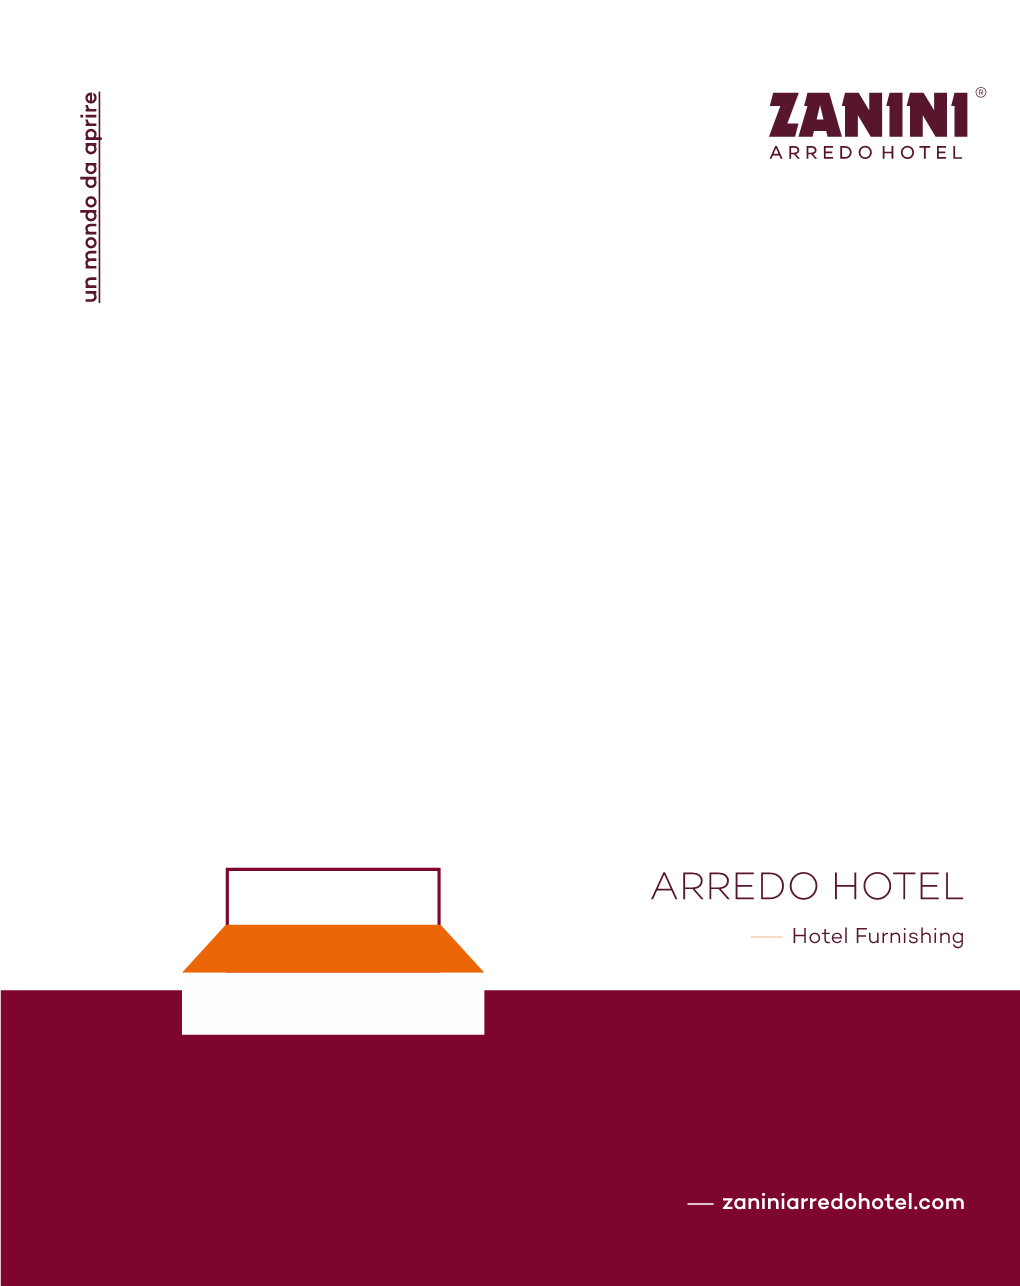 ARREDO HOTEL / Hotel Furnishing